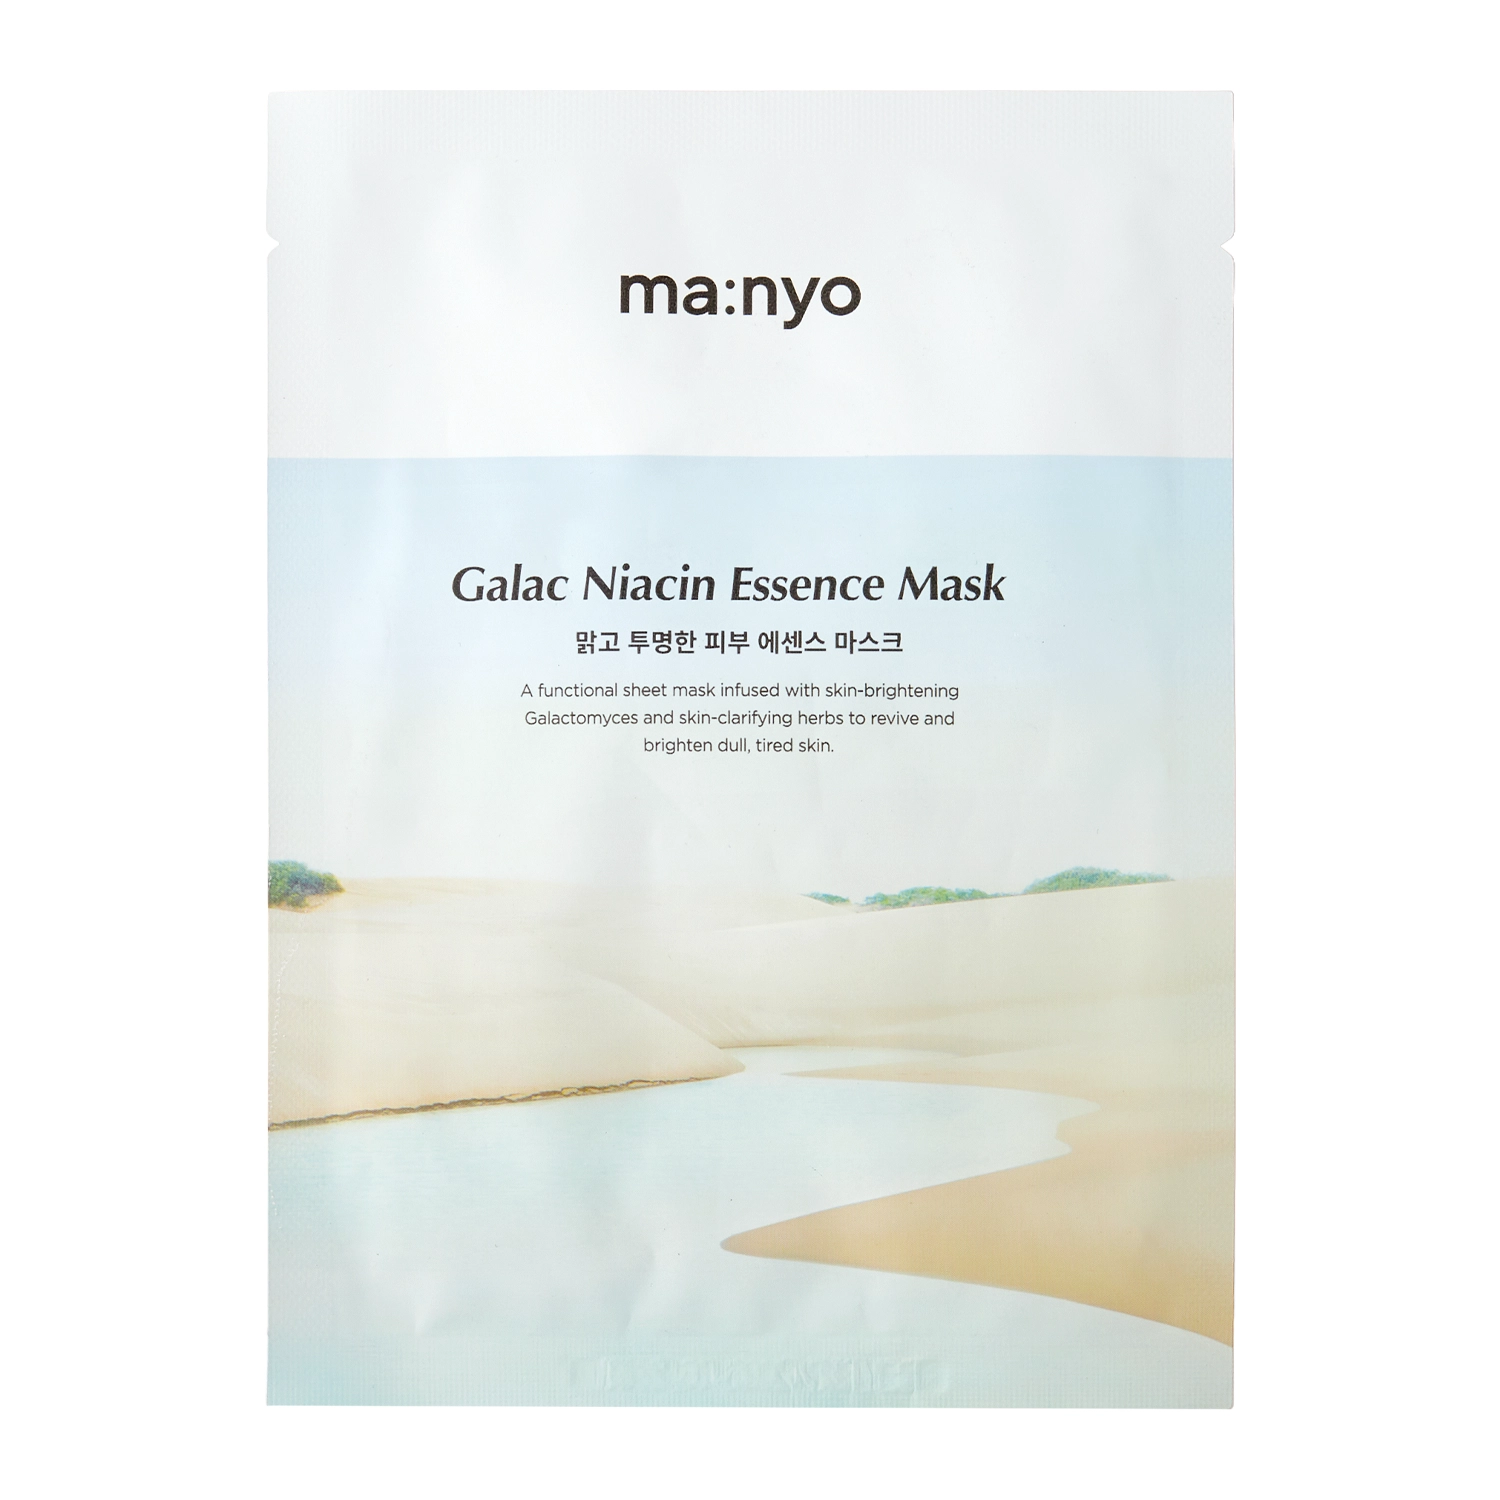 Ma:nyo - Galac Niacin Essence Mask - Világosító Fátyolmaszk - 1db/30g